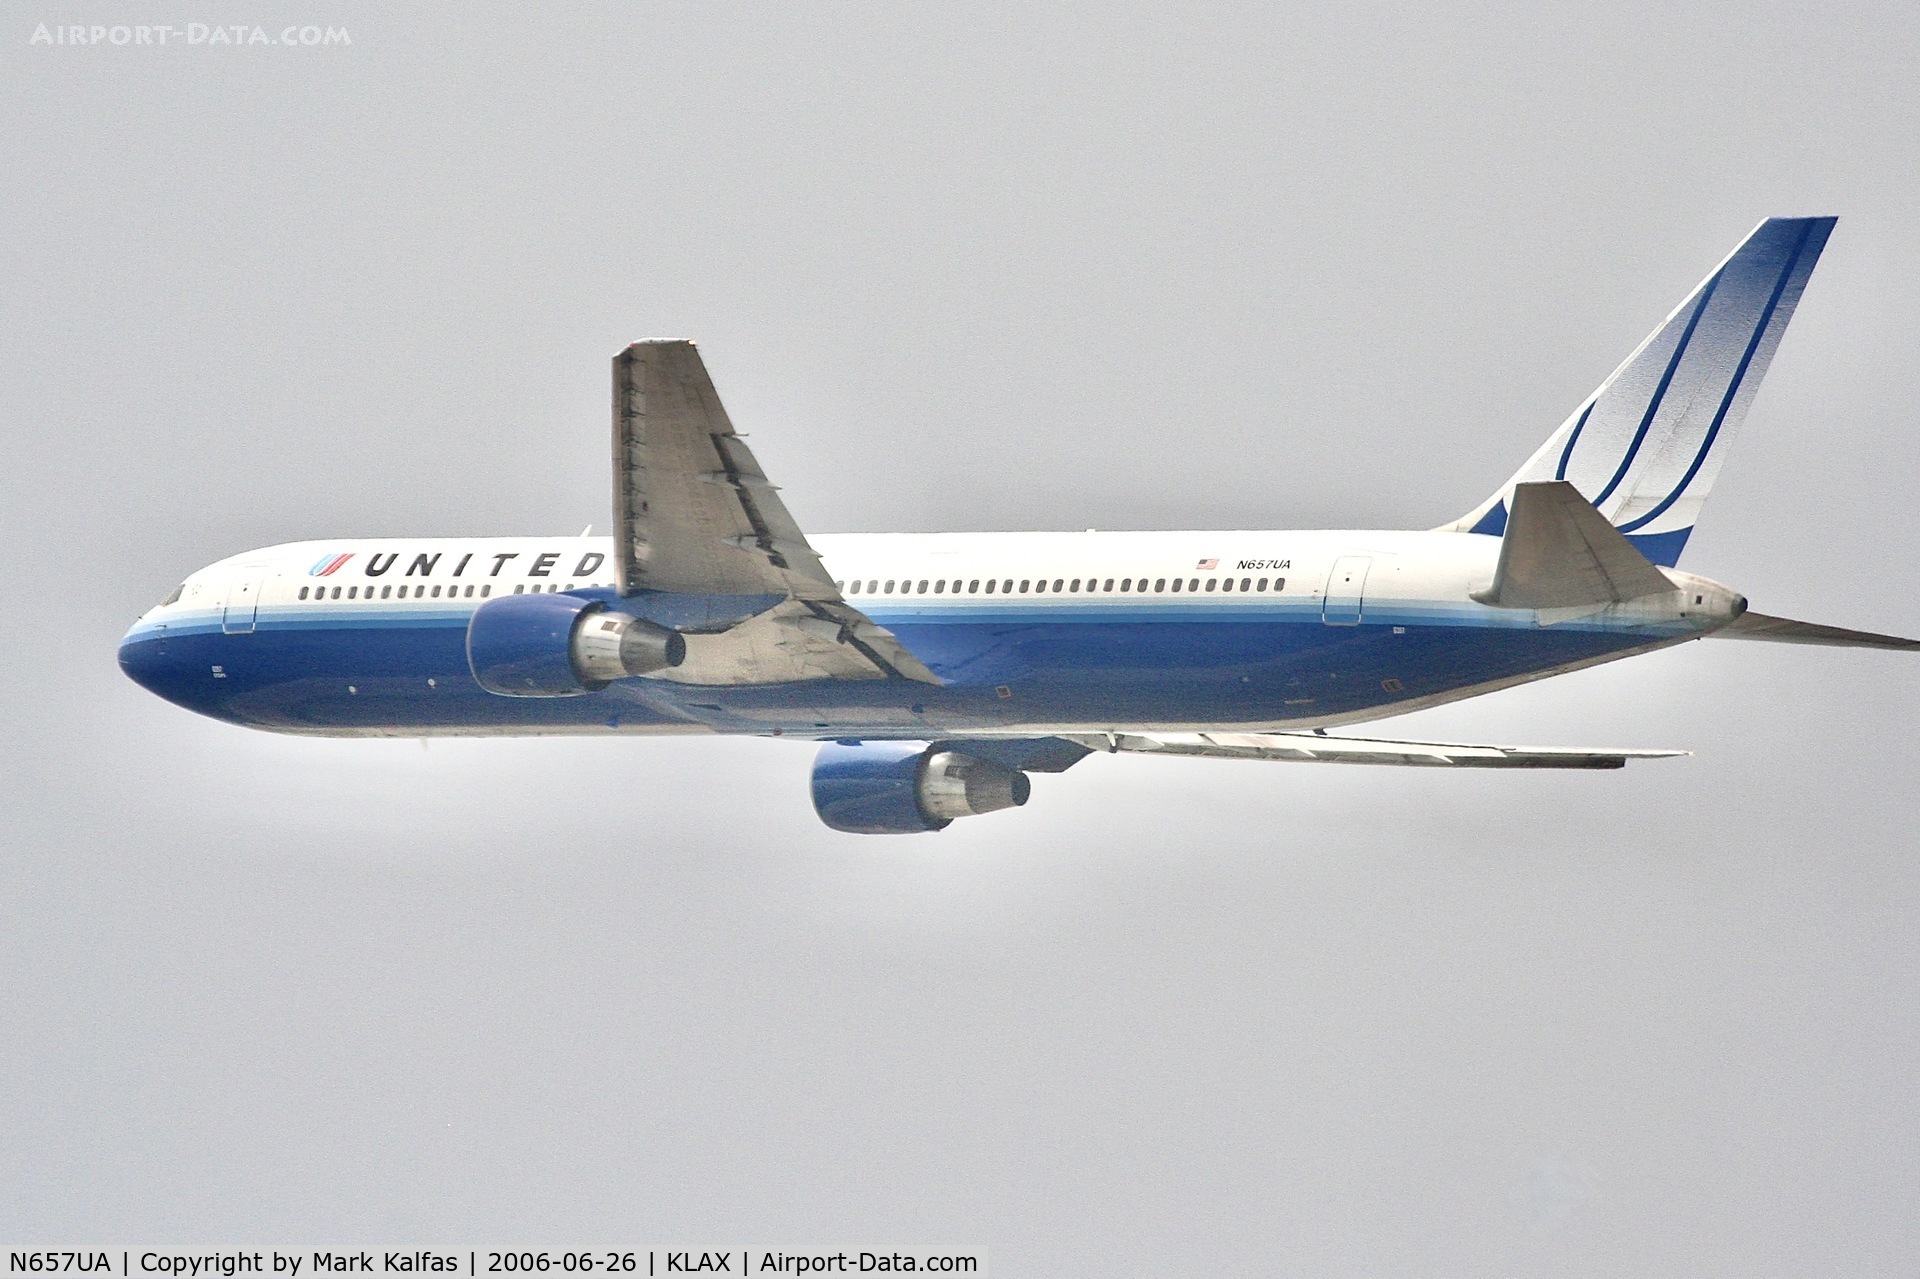 N657UA, 1993 Boeing 767-322 C/N 27112, United Boeing 767-322, N657UA departing 25R LAX